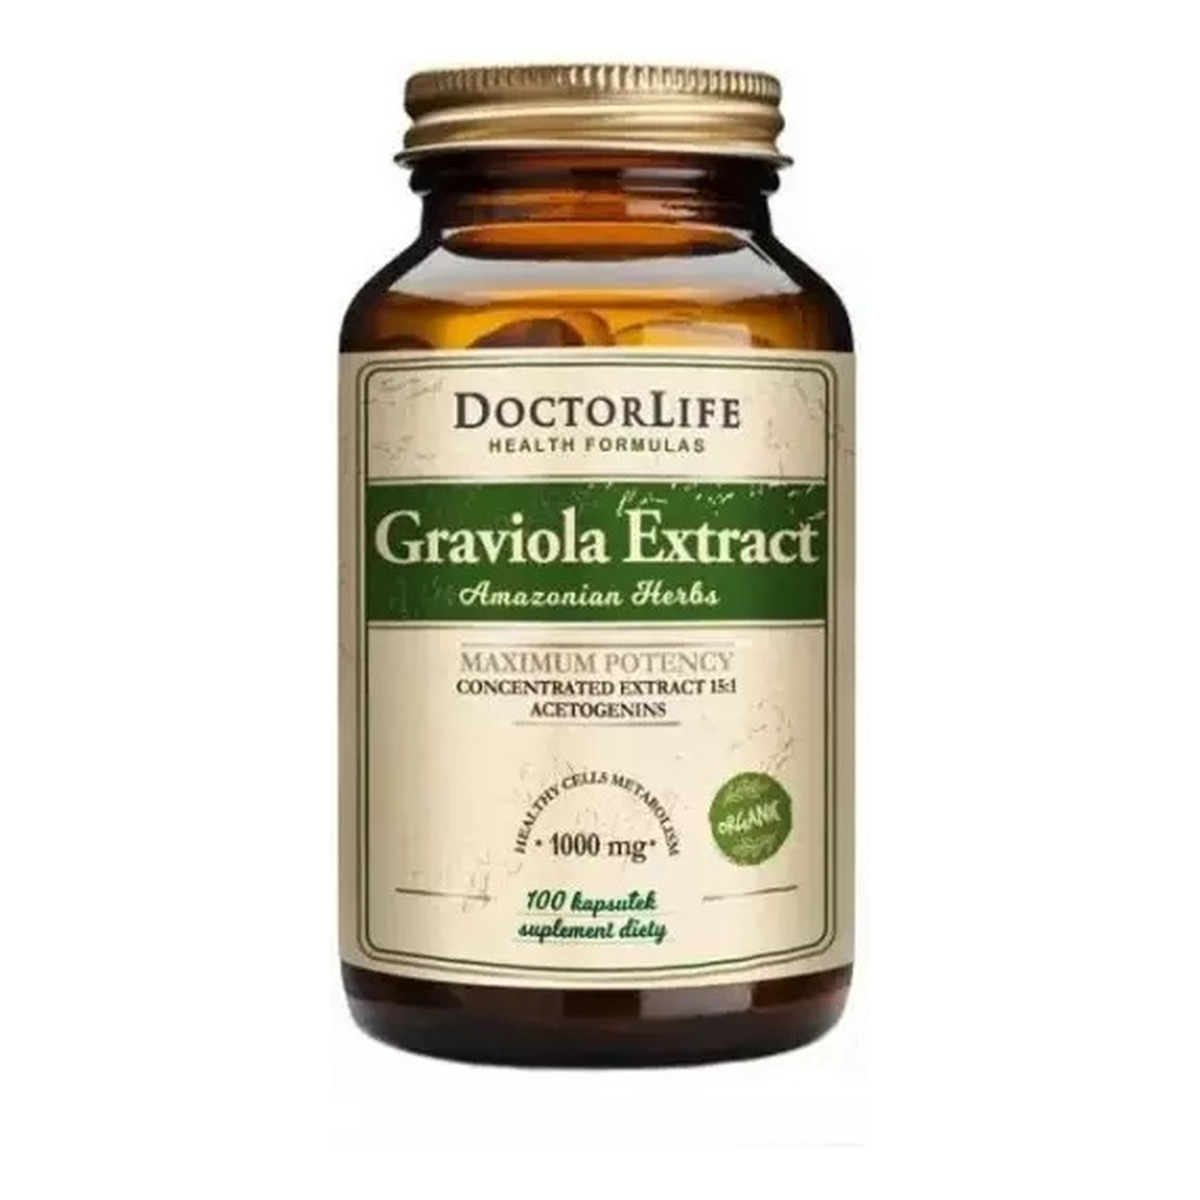 Doctor Life Graviola extract wyciąg z grawioli 4500mg suplement diety 100 kapsułek